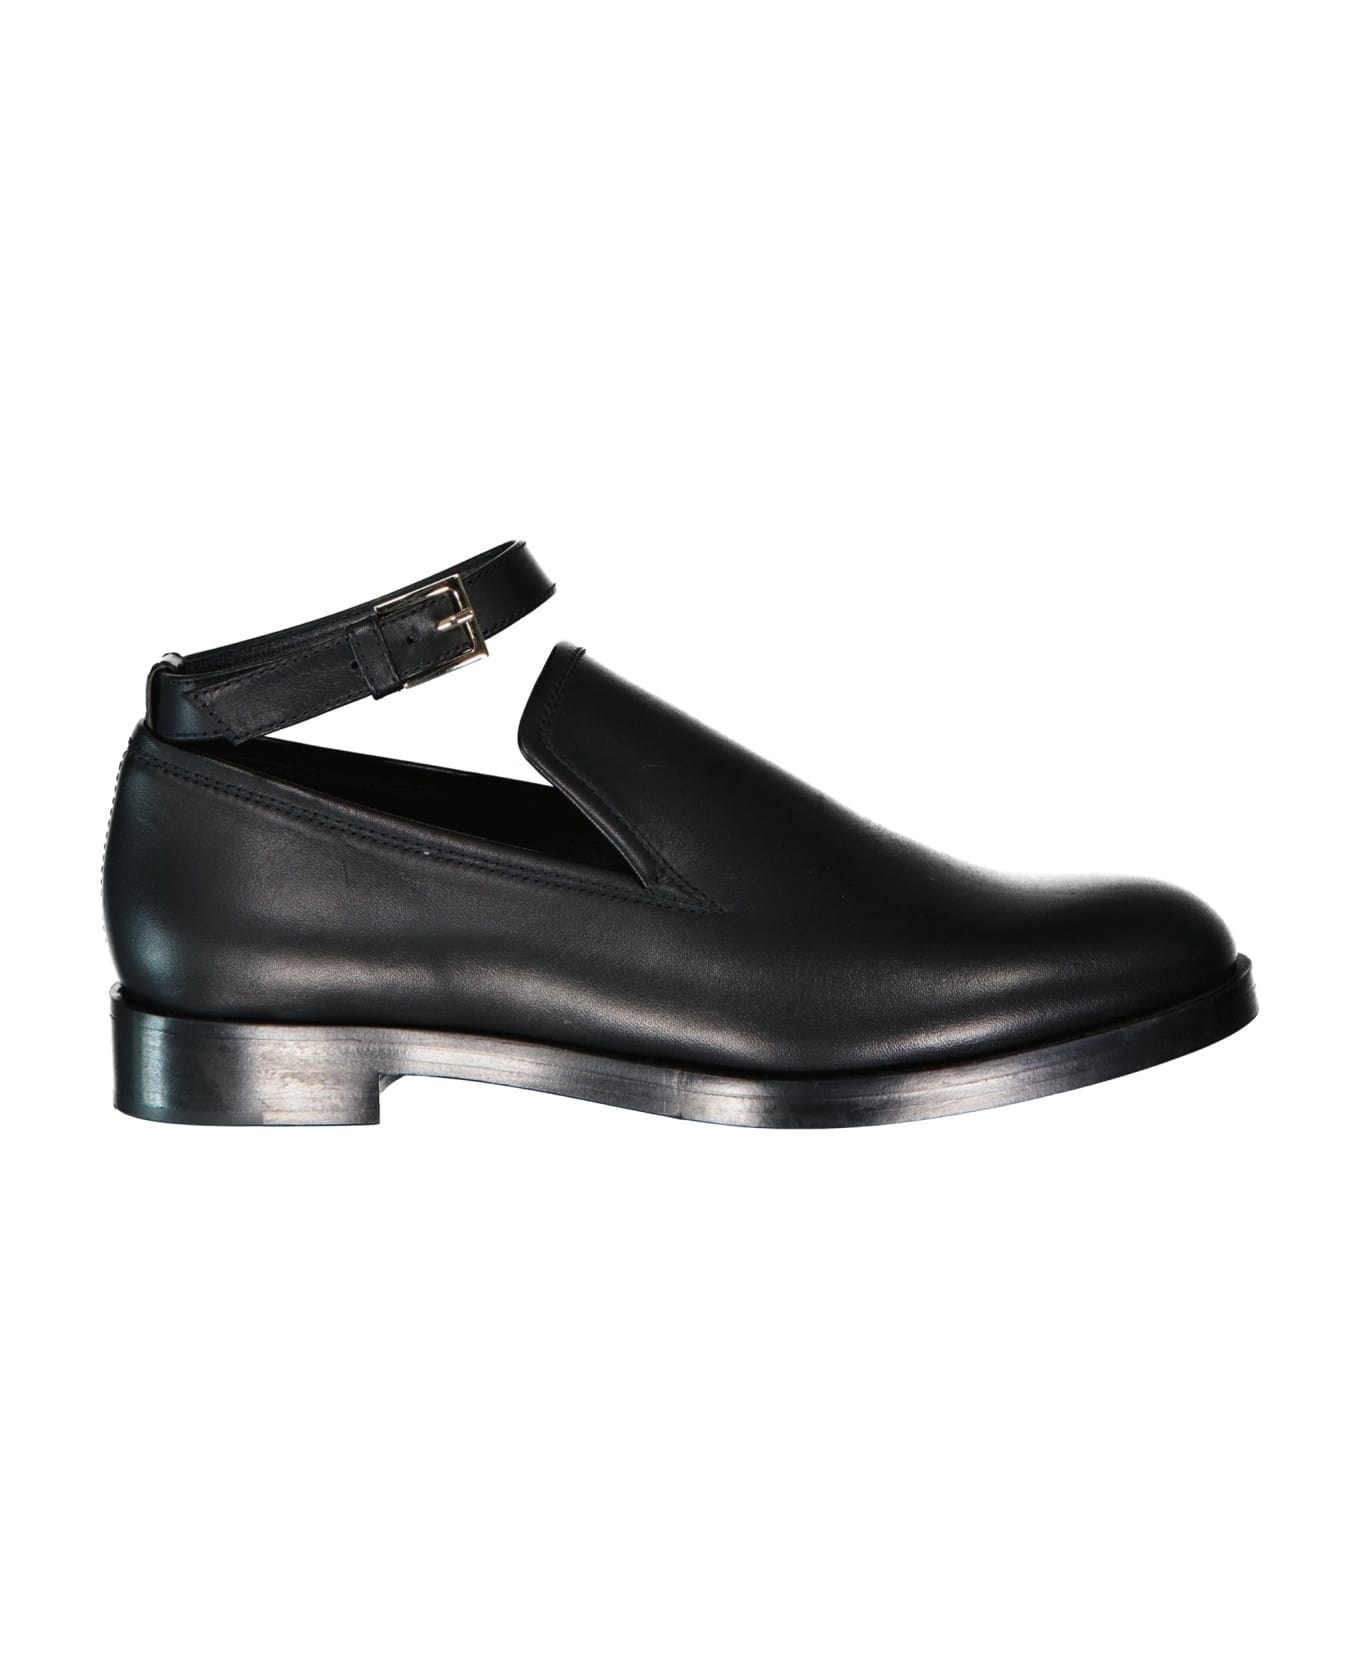 Max Mara Accessori Lawrie Leather Loafers - Black